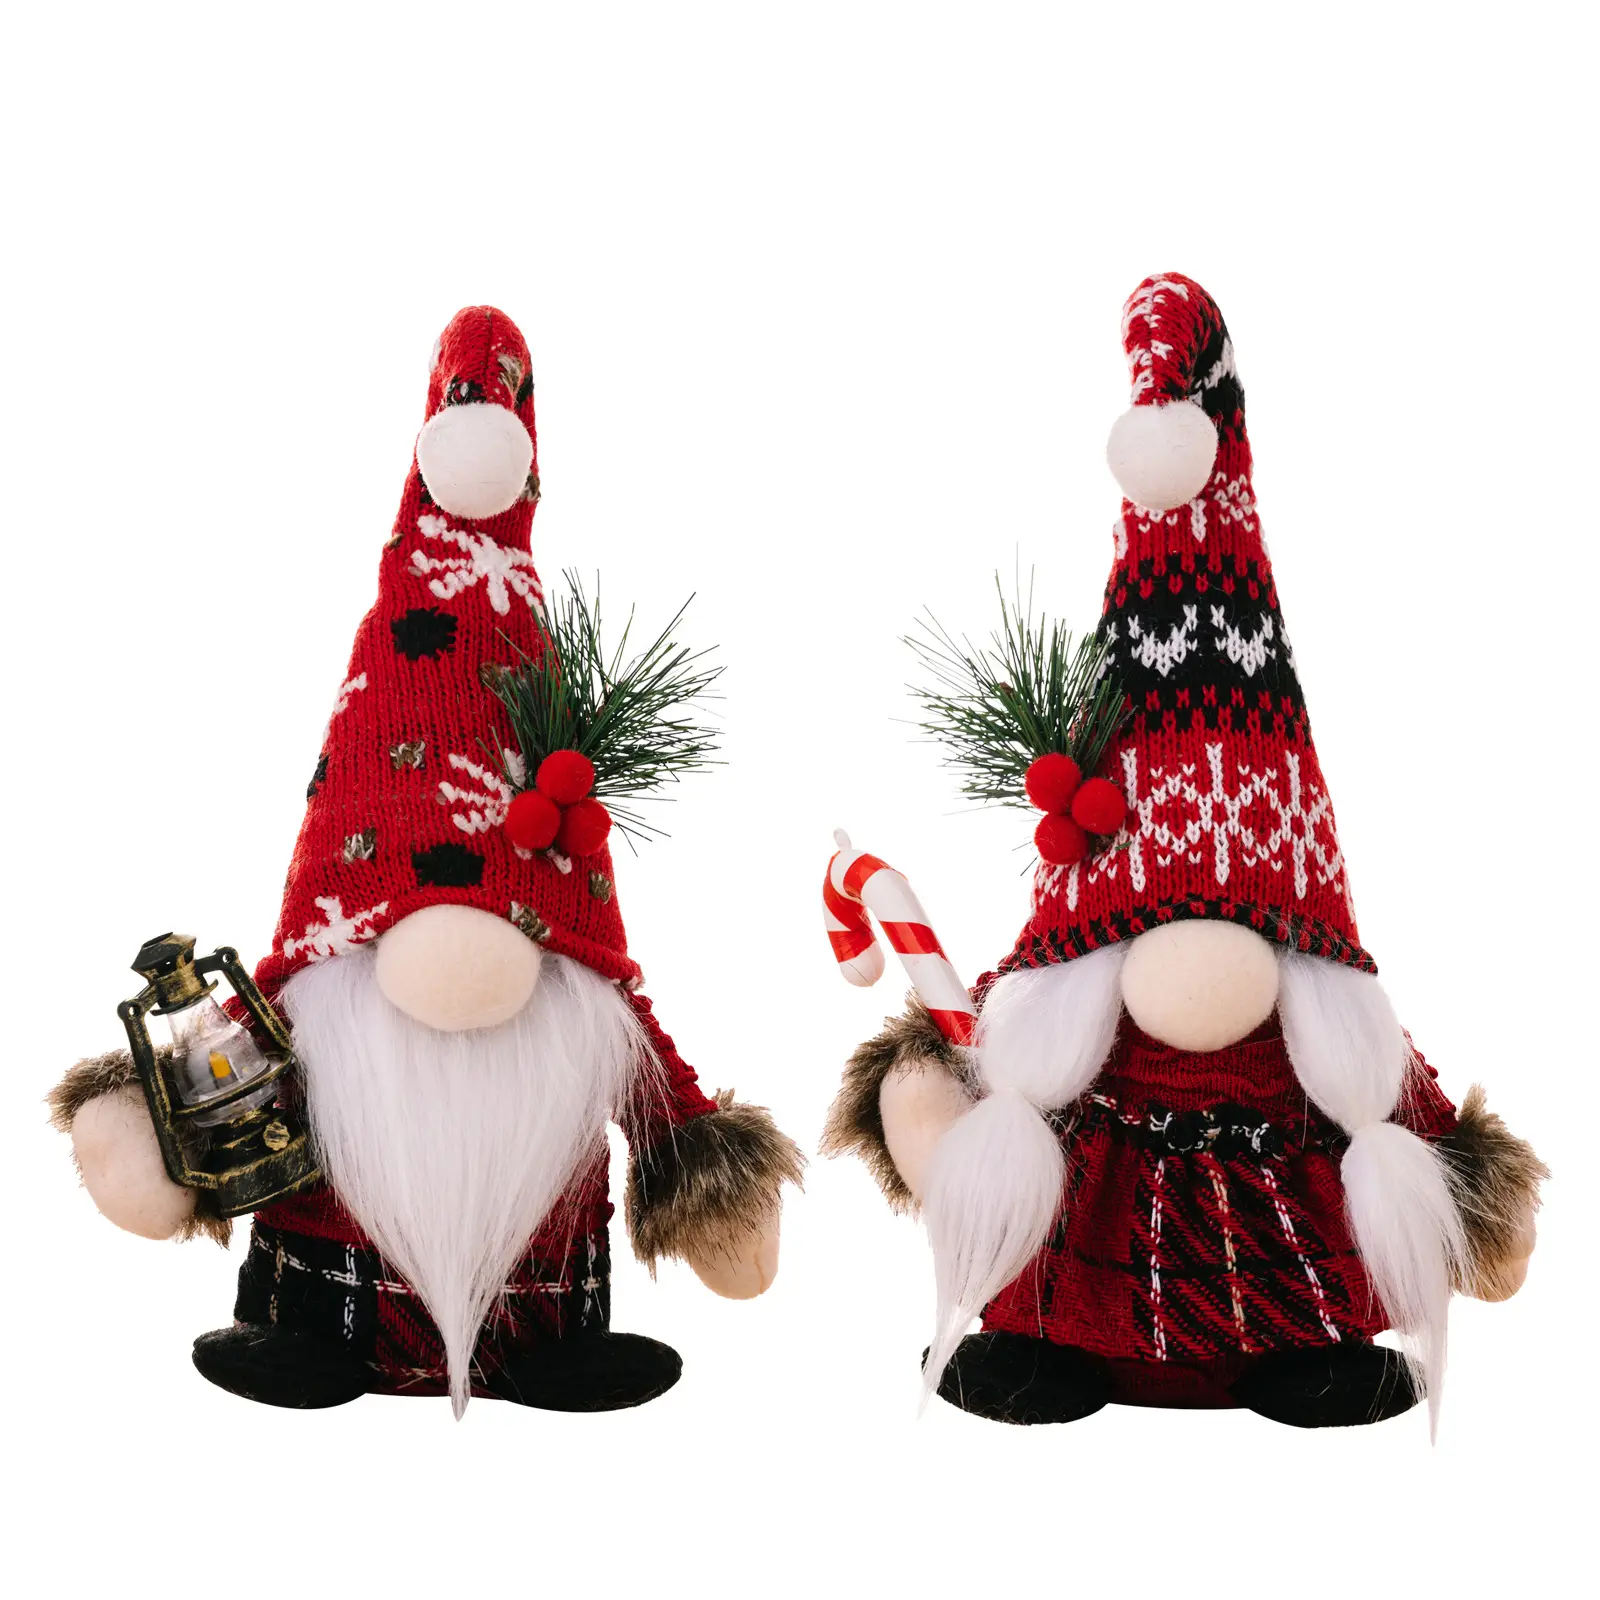 Senza volto illuminano gnomi statuetta di peluche ornamenti natalizi a maglia con cappello curvo stampella nana vintage festa di natale decorazione per la casa